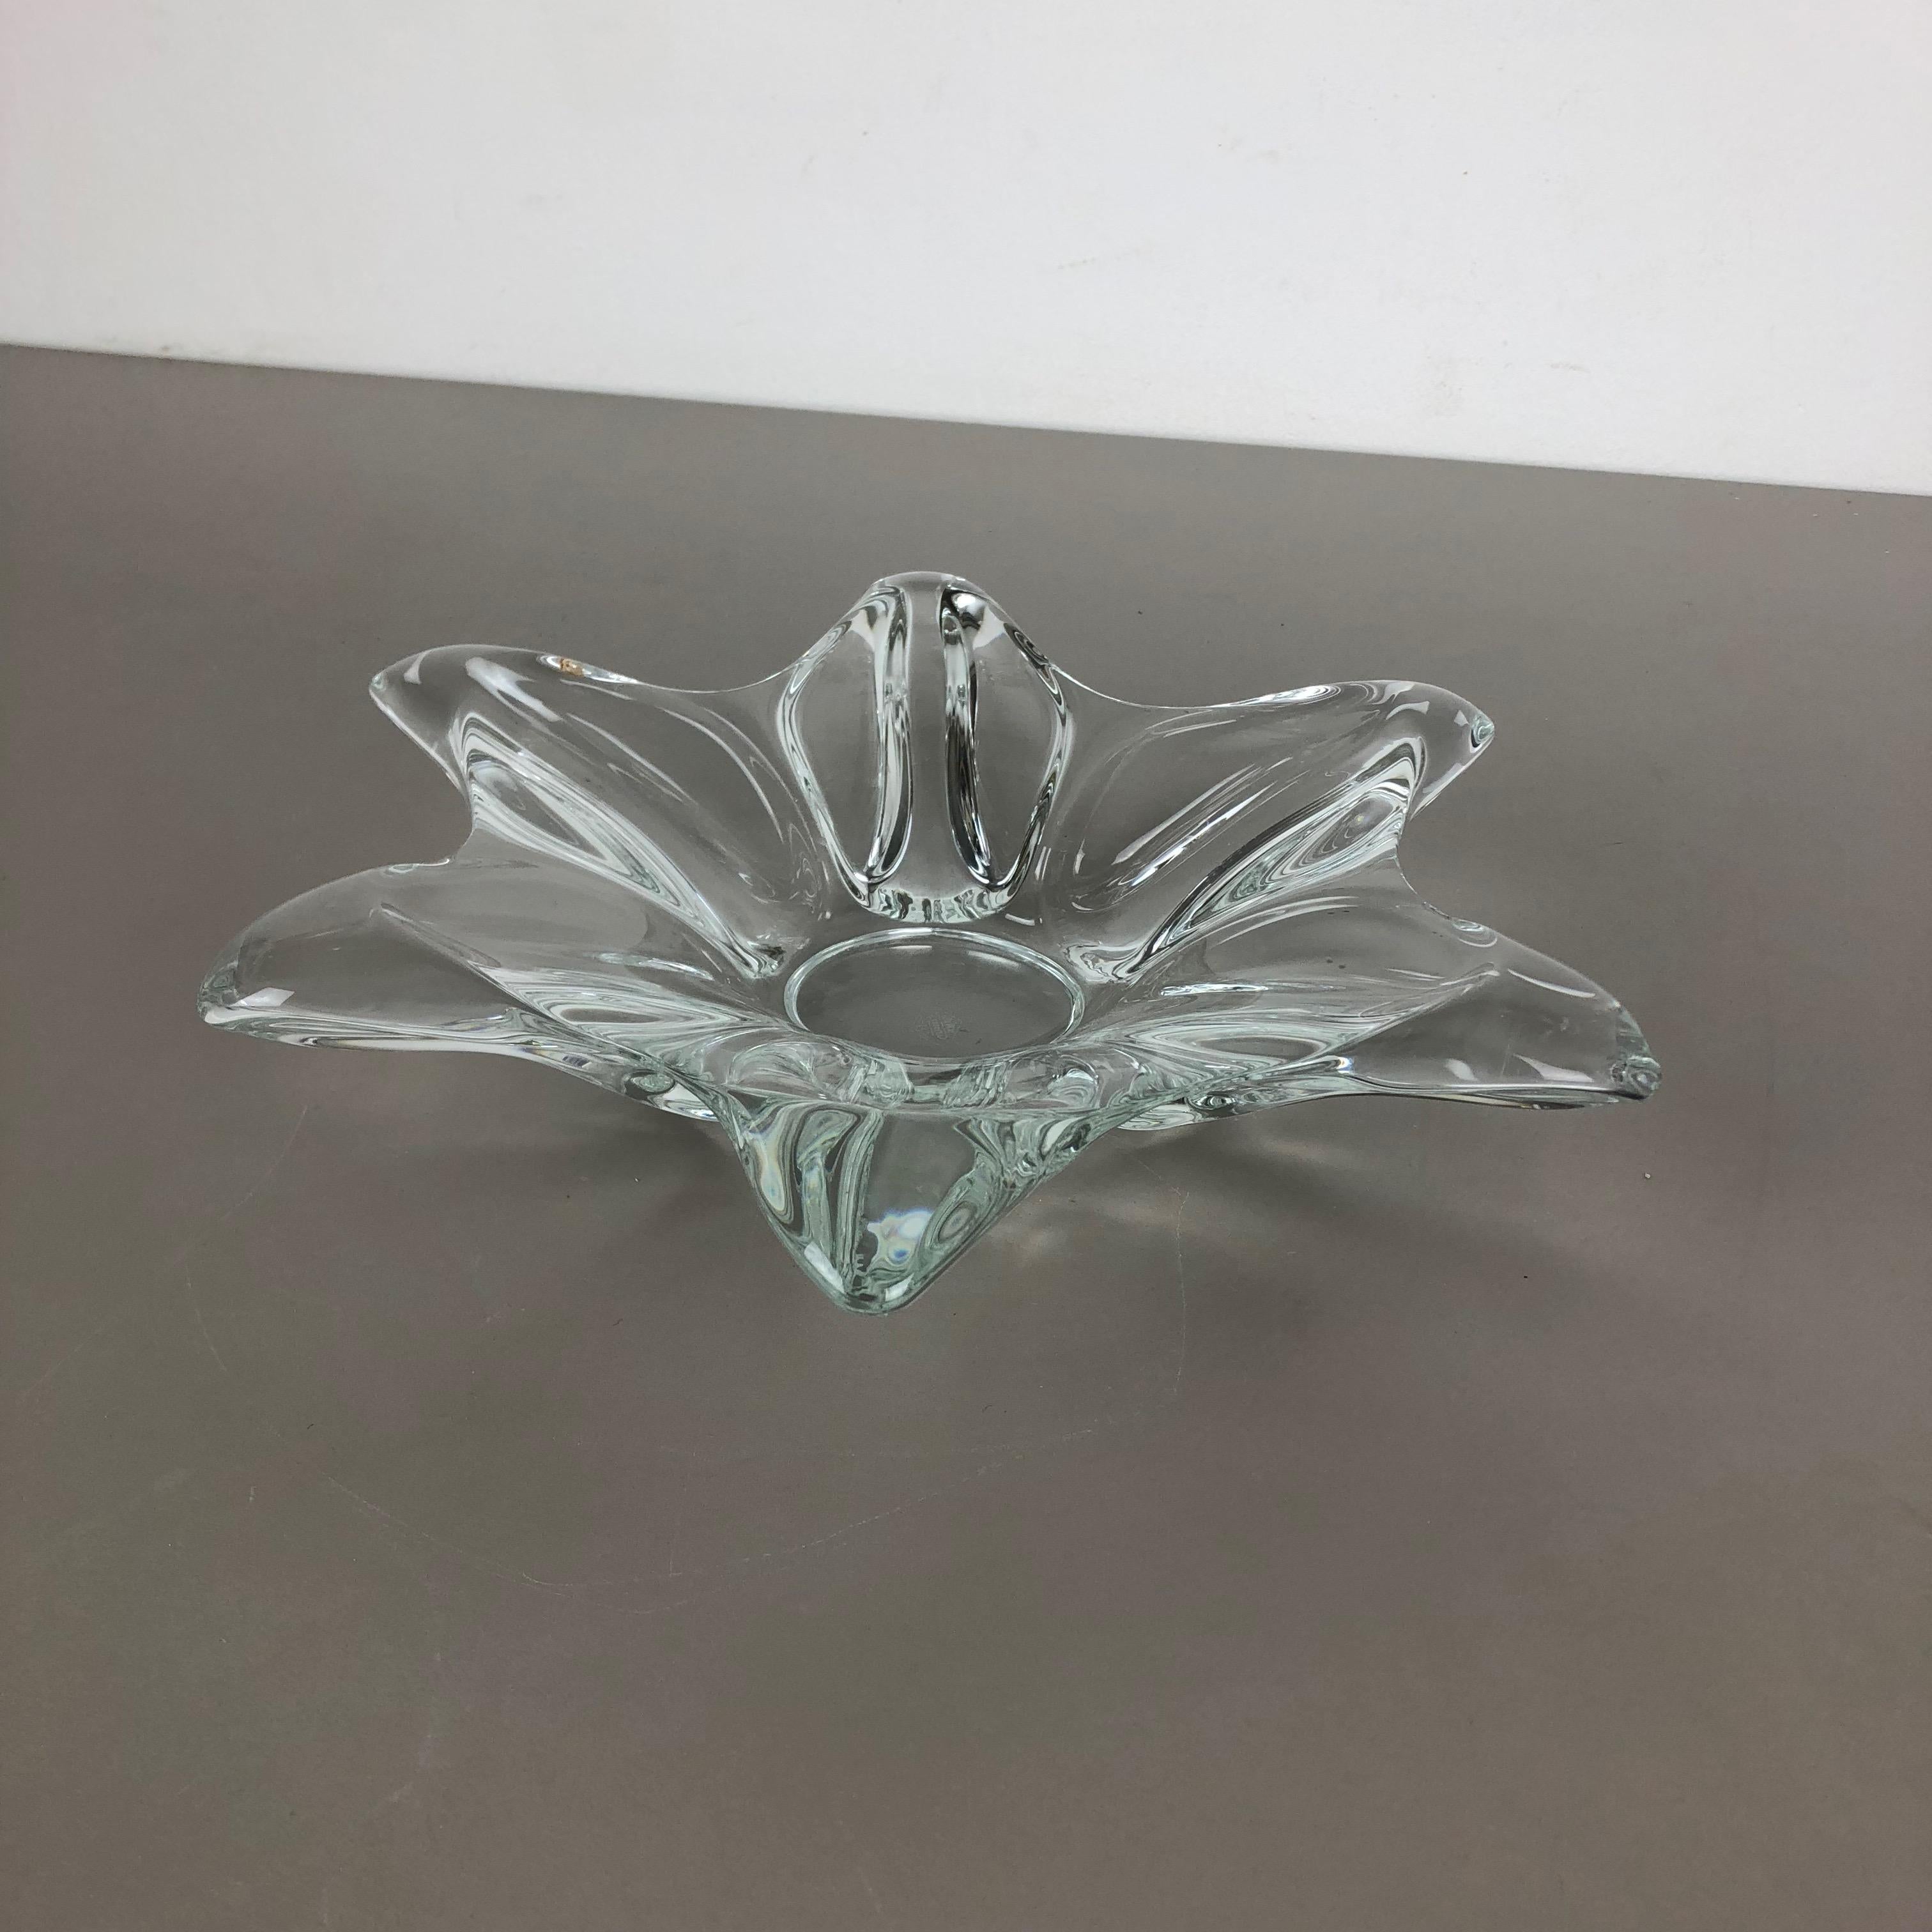 Artikel: Kristallglasschale 



Produzent: ART VANNES FRANCE (markiert)



Alter: 1970er Jahre



 

Wunderschönes schweres Glaselement, das in den 1970er Jahren von Art Vannes in Frankreich entworfen und hergestellt wurde. Diese